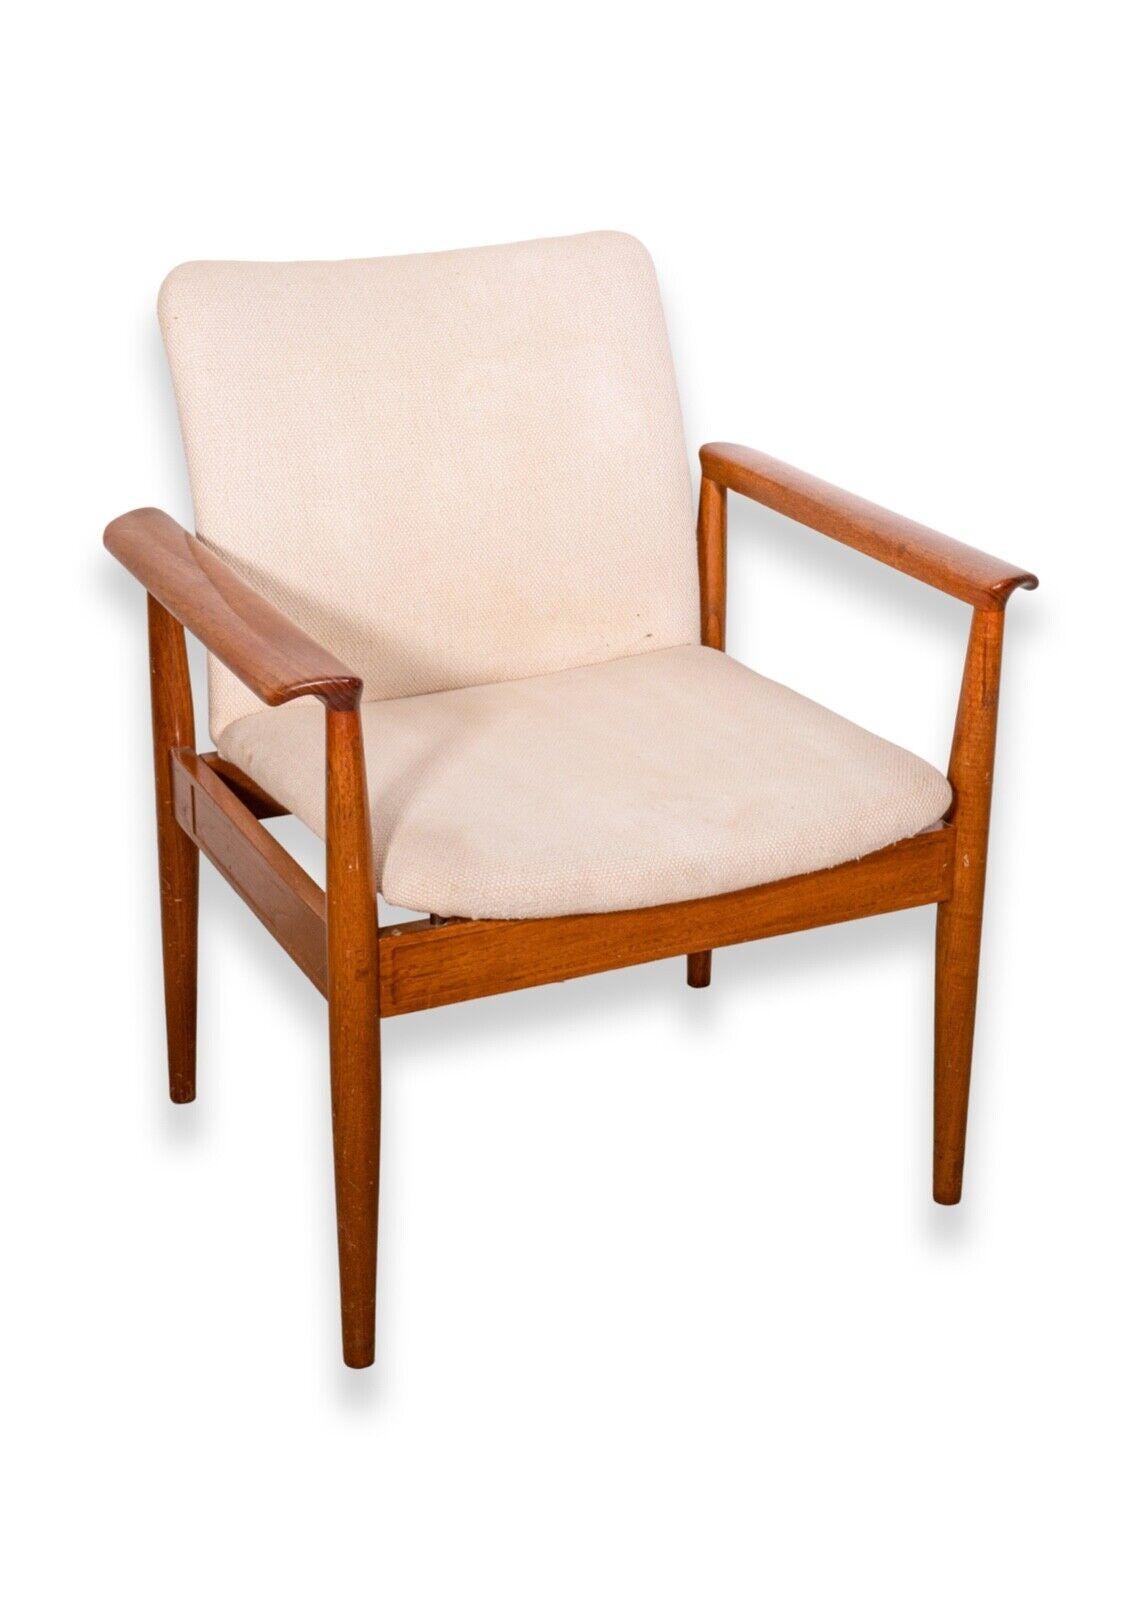 Paire de fauteuils modernes et sophistiqués conçus par Finn Juhl pour France & Son, Danemark. Connue sous le nom de Diplomat Chair, modèle 209. Produit dans les années 1960. Un cadre élégant en teck et un rembourrage crème neutre. Marque de fabrique